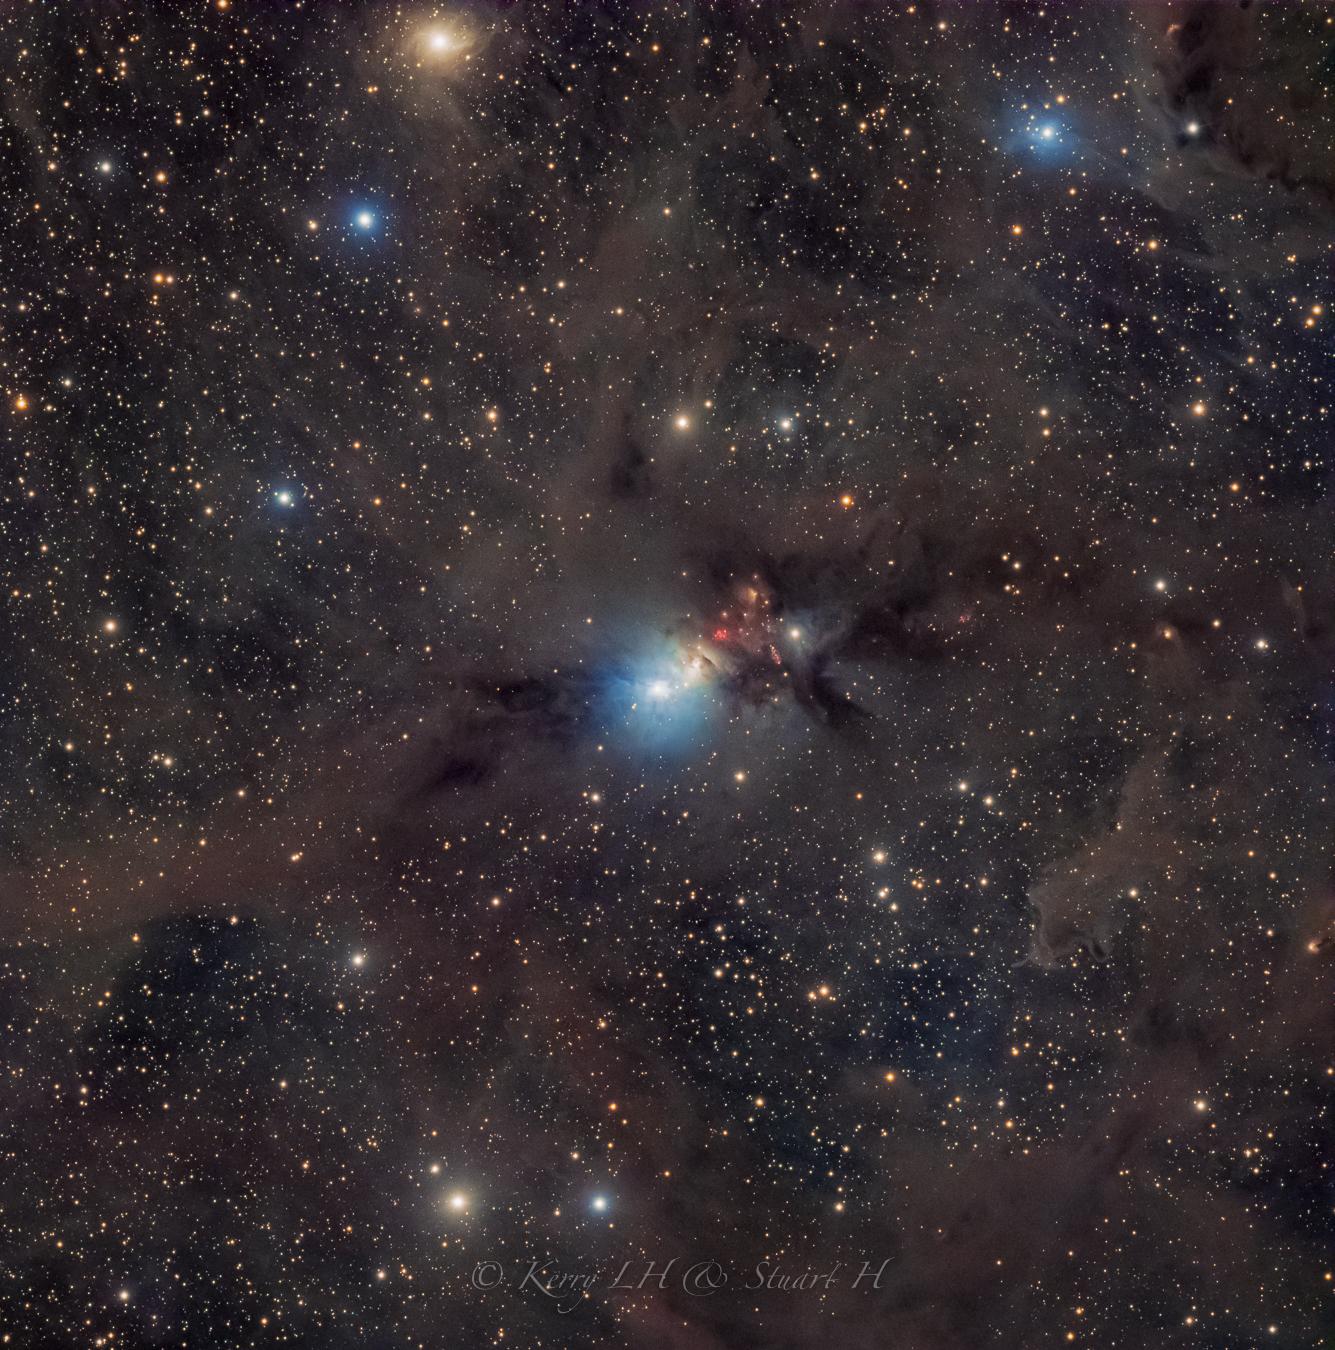 صورة للفضاء العميق بعرض درجتين تقريباً تظهر فيها عدّة سدم انعكاسيّة أكبرها إن‌جي‌سي 1333 في المركز، كما يظهر ڤ‌د‌ب 13 أعلى اليمين، و ڤ‌د‌ب 12 المصفرّ النادر قرب أعلى الإطار. ينتشر الغبار النجمي عبر الإطار الذي ترصّعه النجوم.